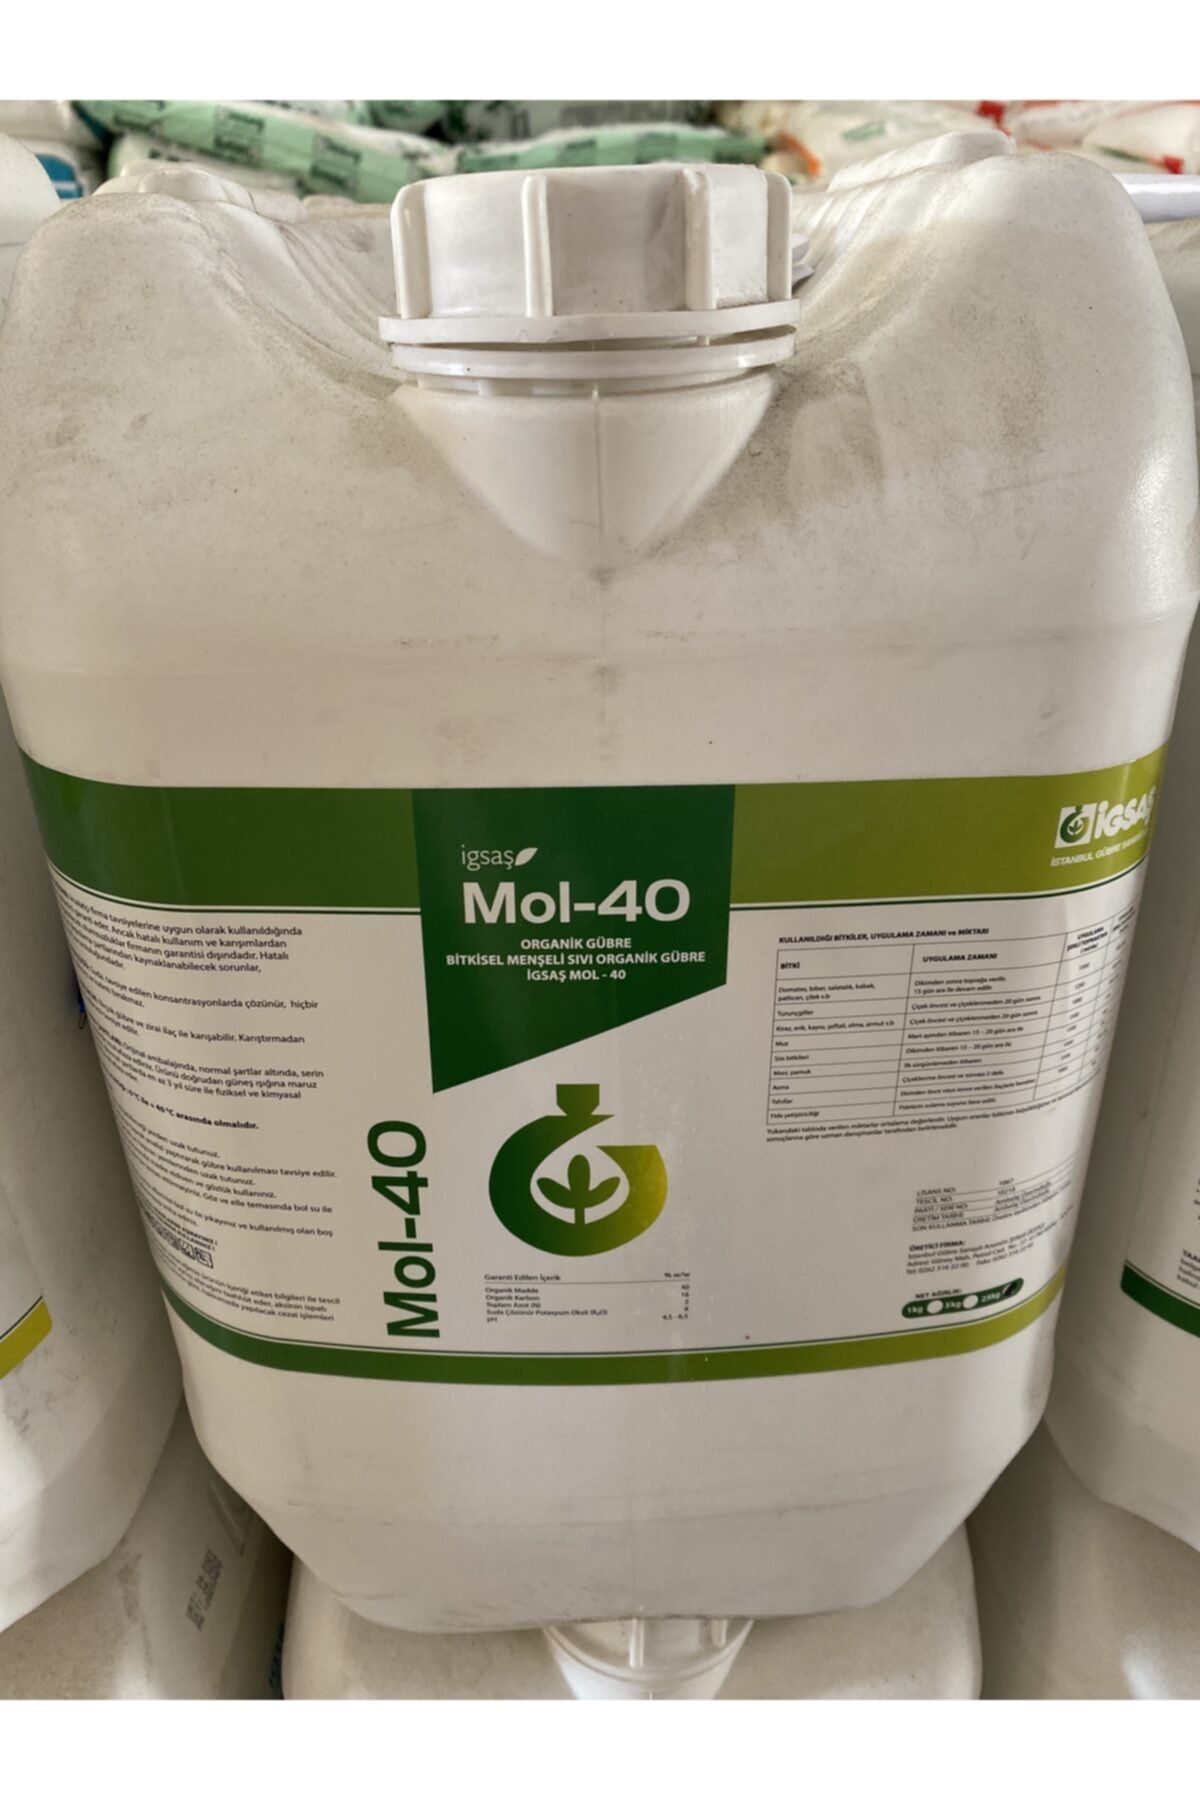 İGSAŞ Mol-40 Hümik Asit Bitkisel Menşeli Sıvı Organik Gübre 25 Kg